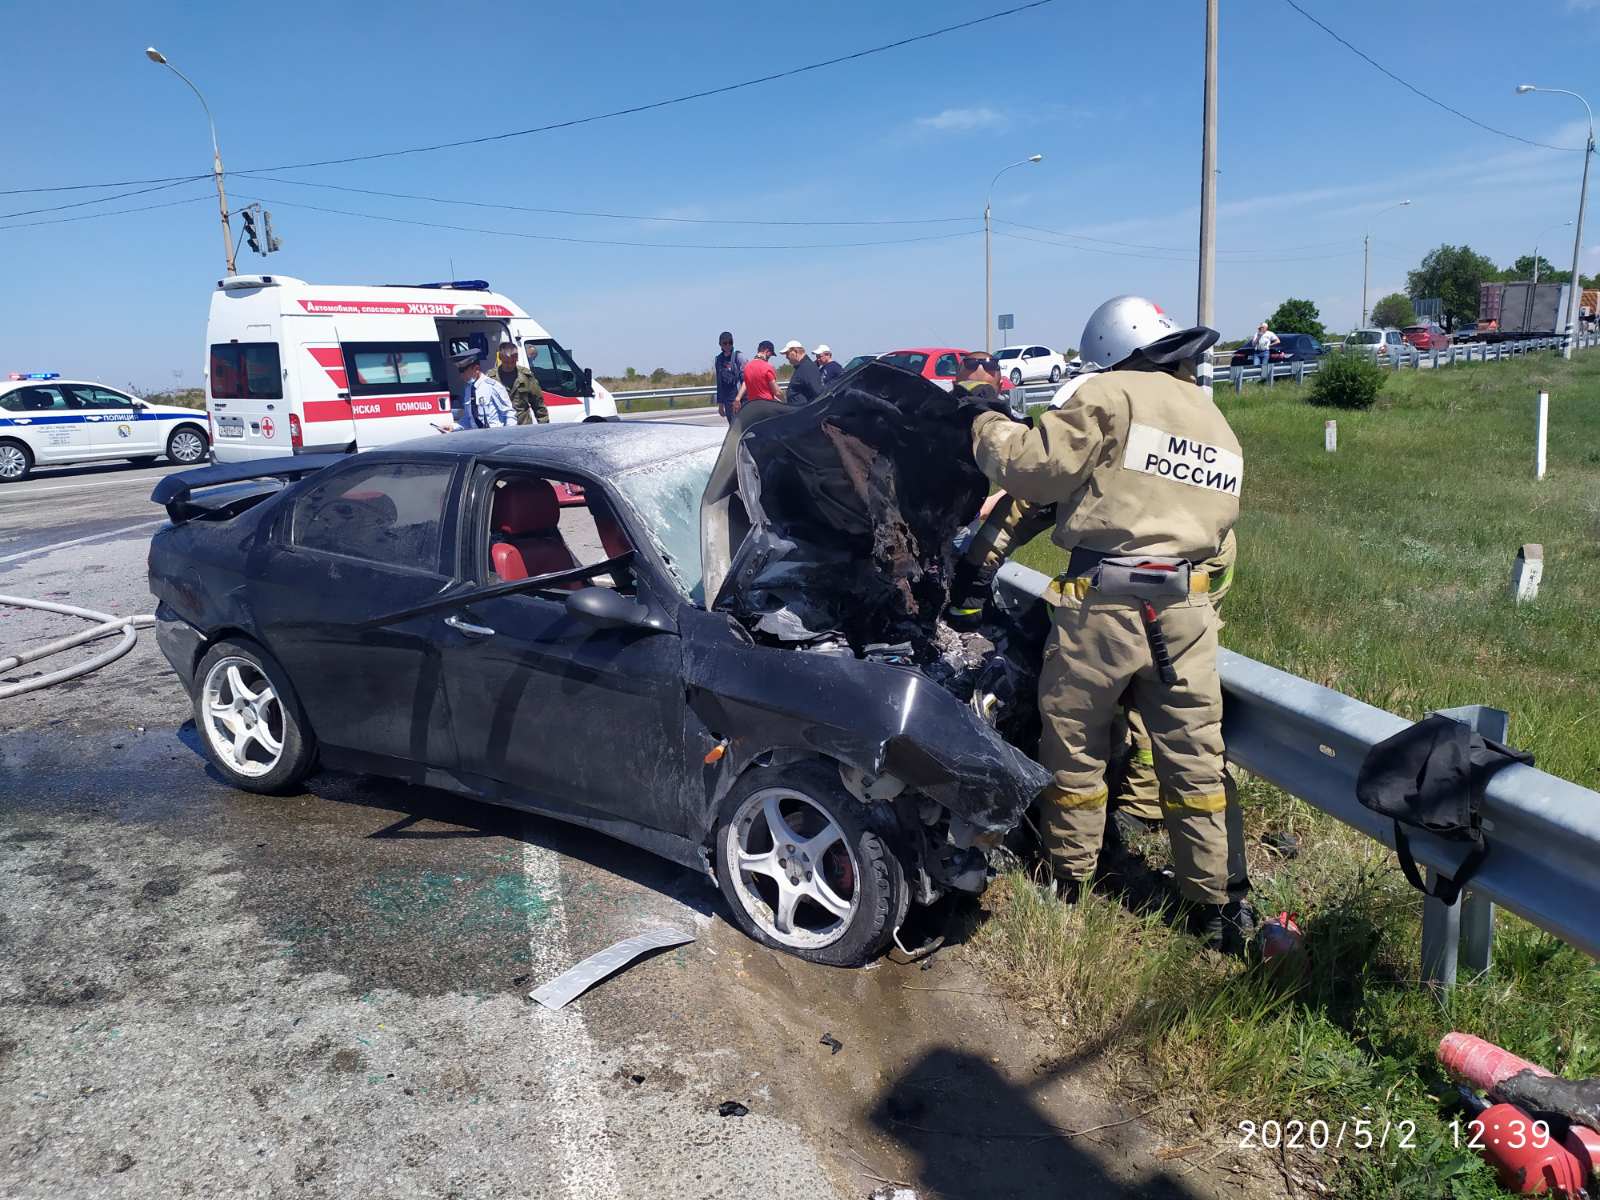 Новости севастополя сегодня последние свежие происшествия. Авария на трассе Севастополь.